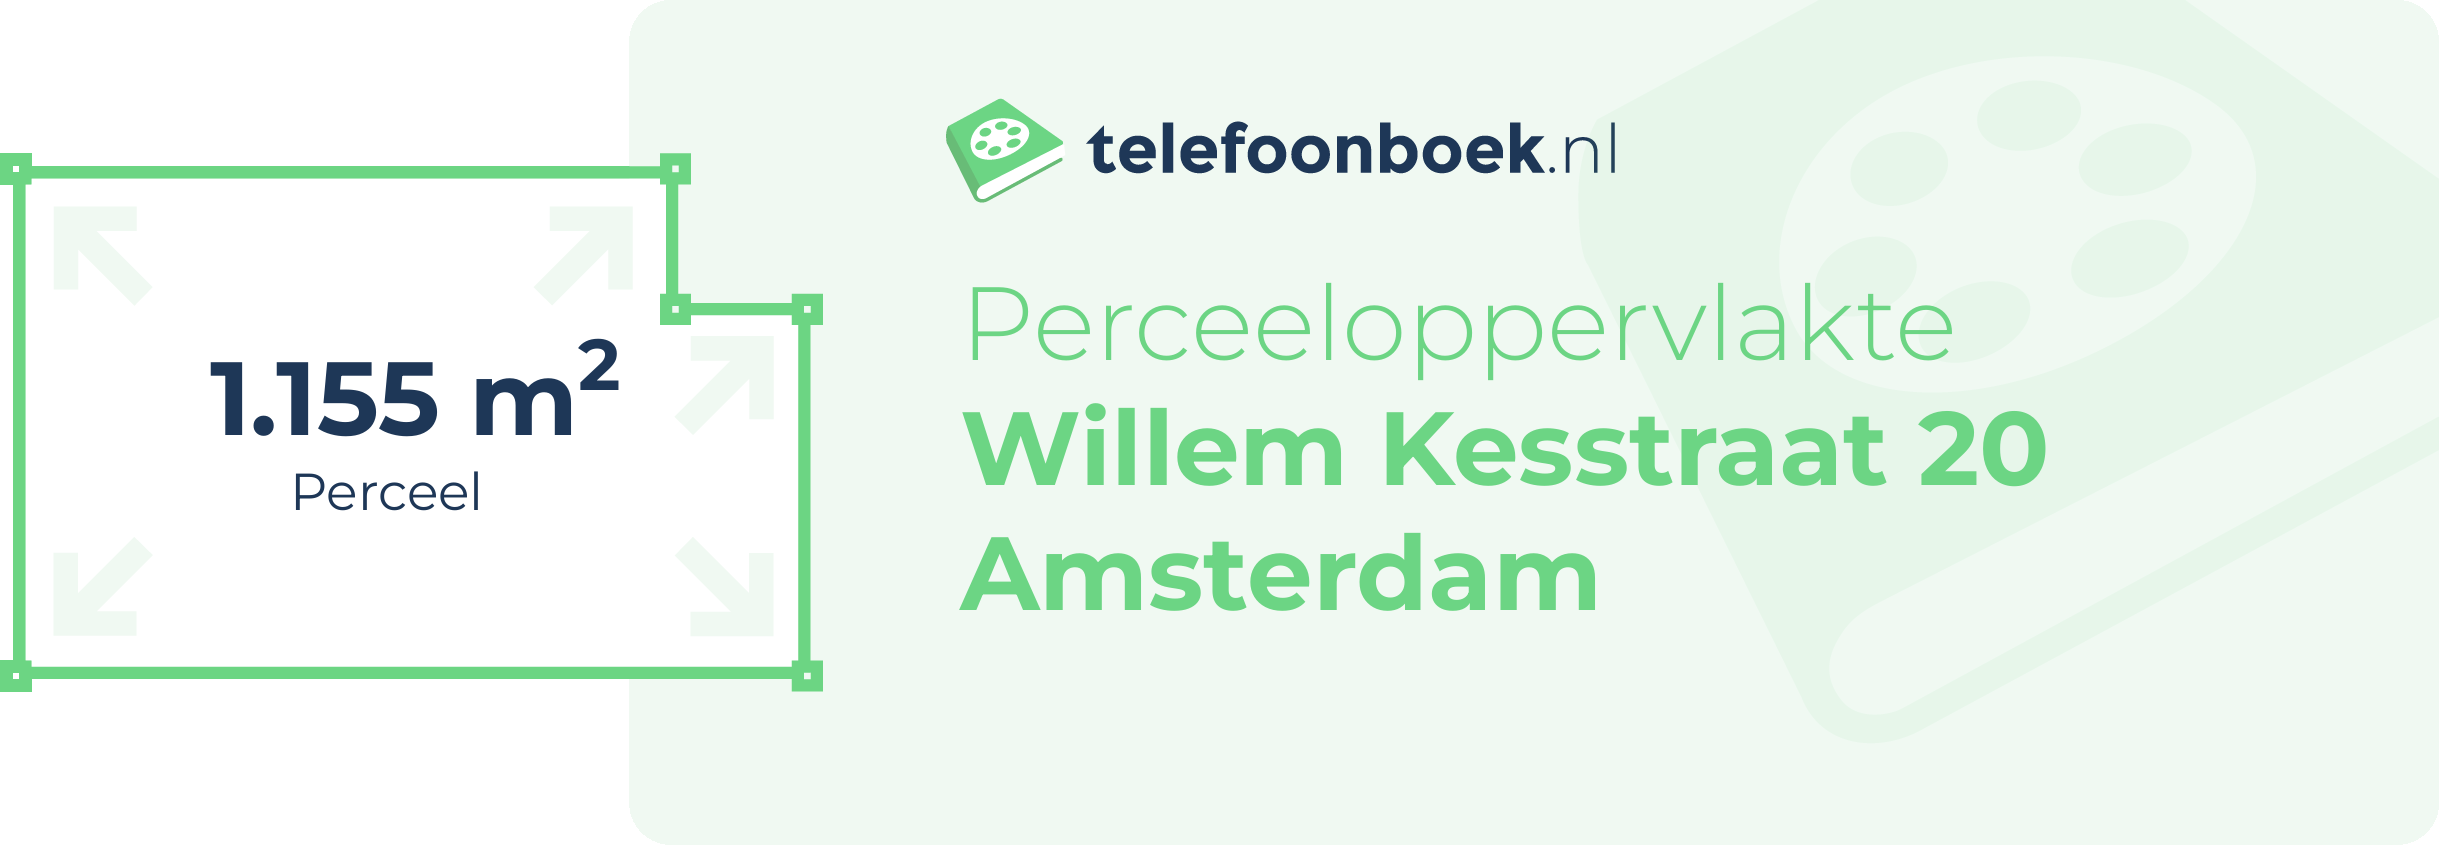 Perceeloppervlakte Willem Kesstraat 20 Amsterdam